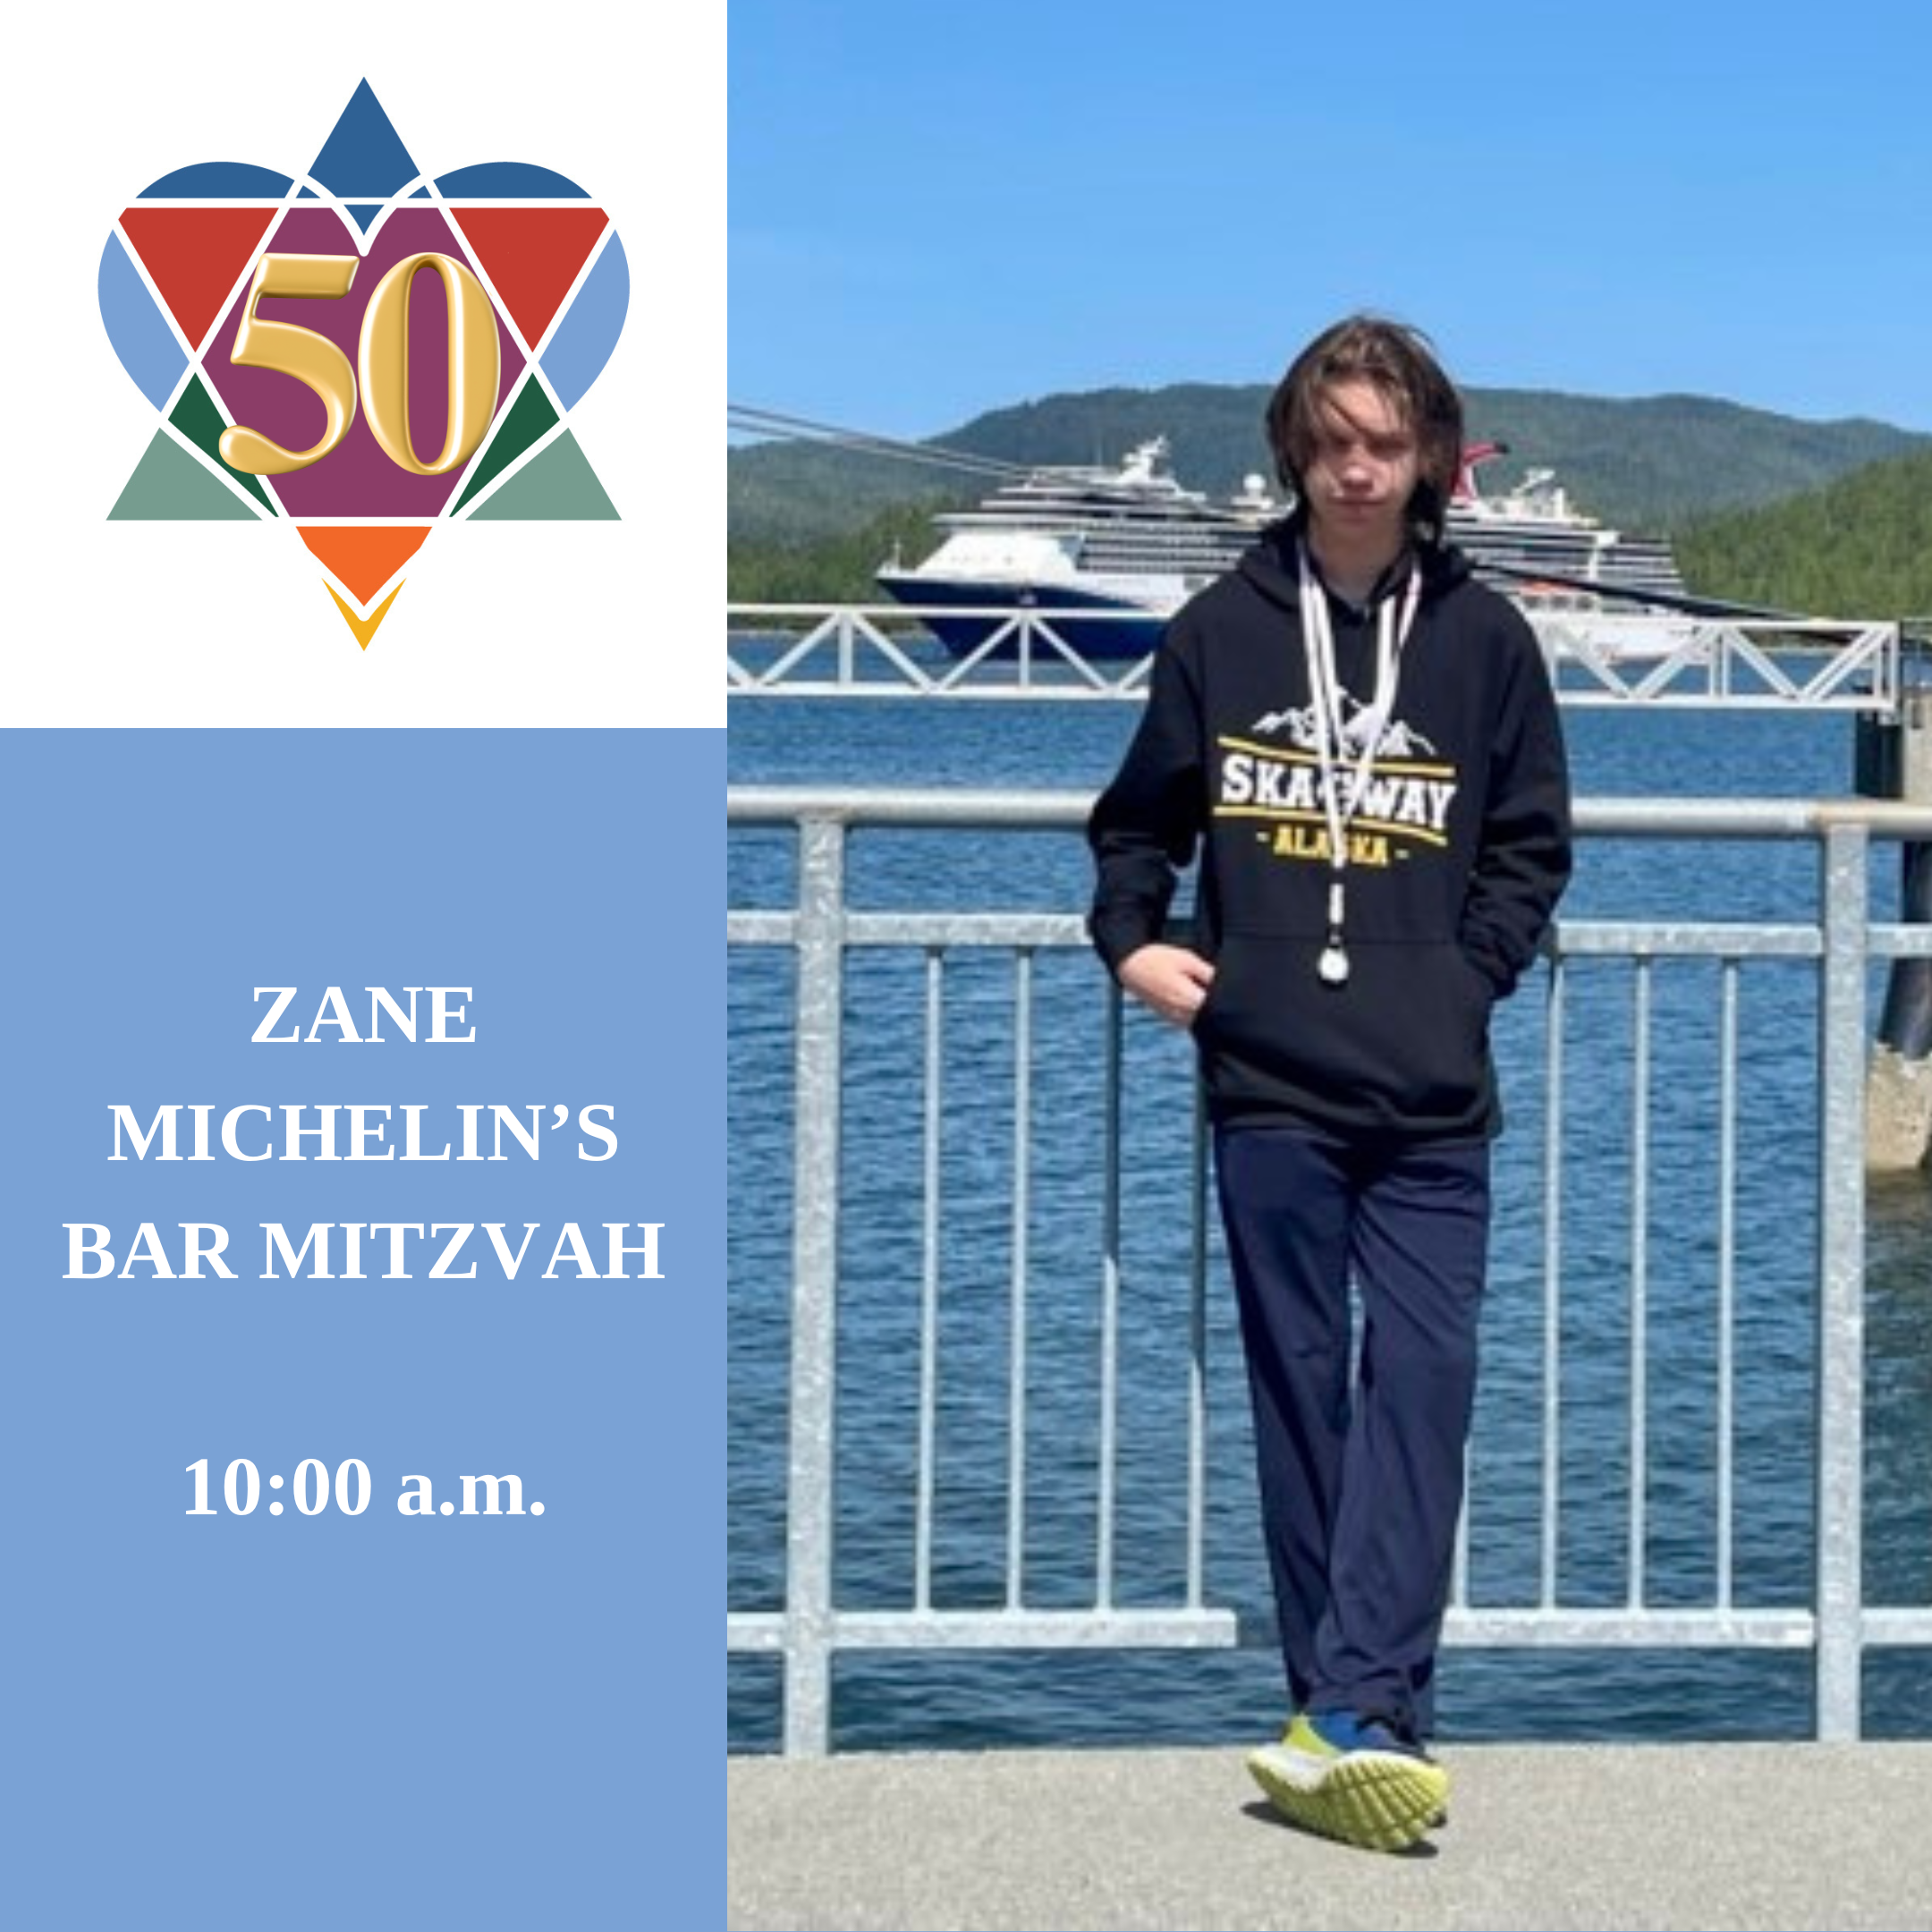 ZANE MICHELIN'S BAR MITZVAH